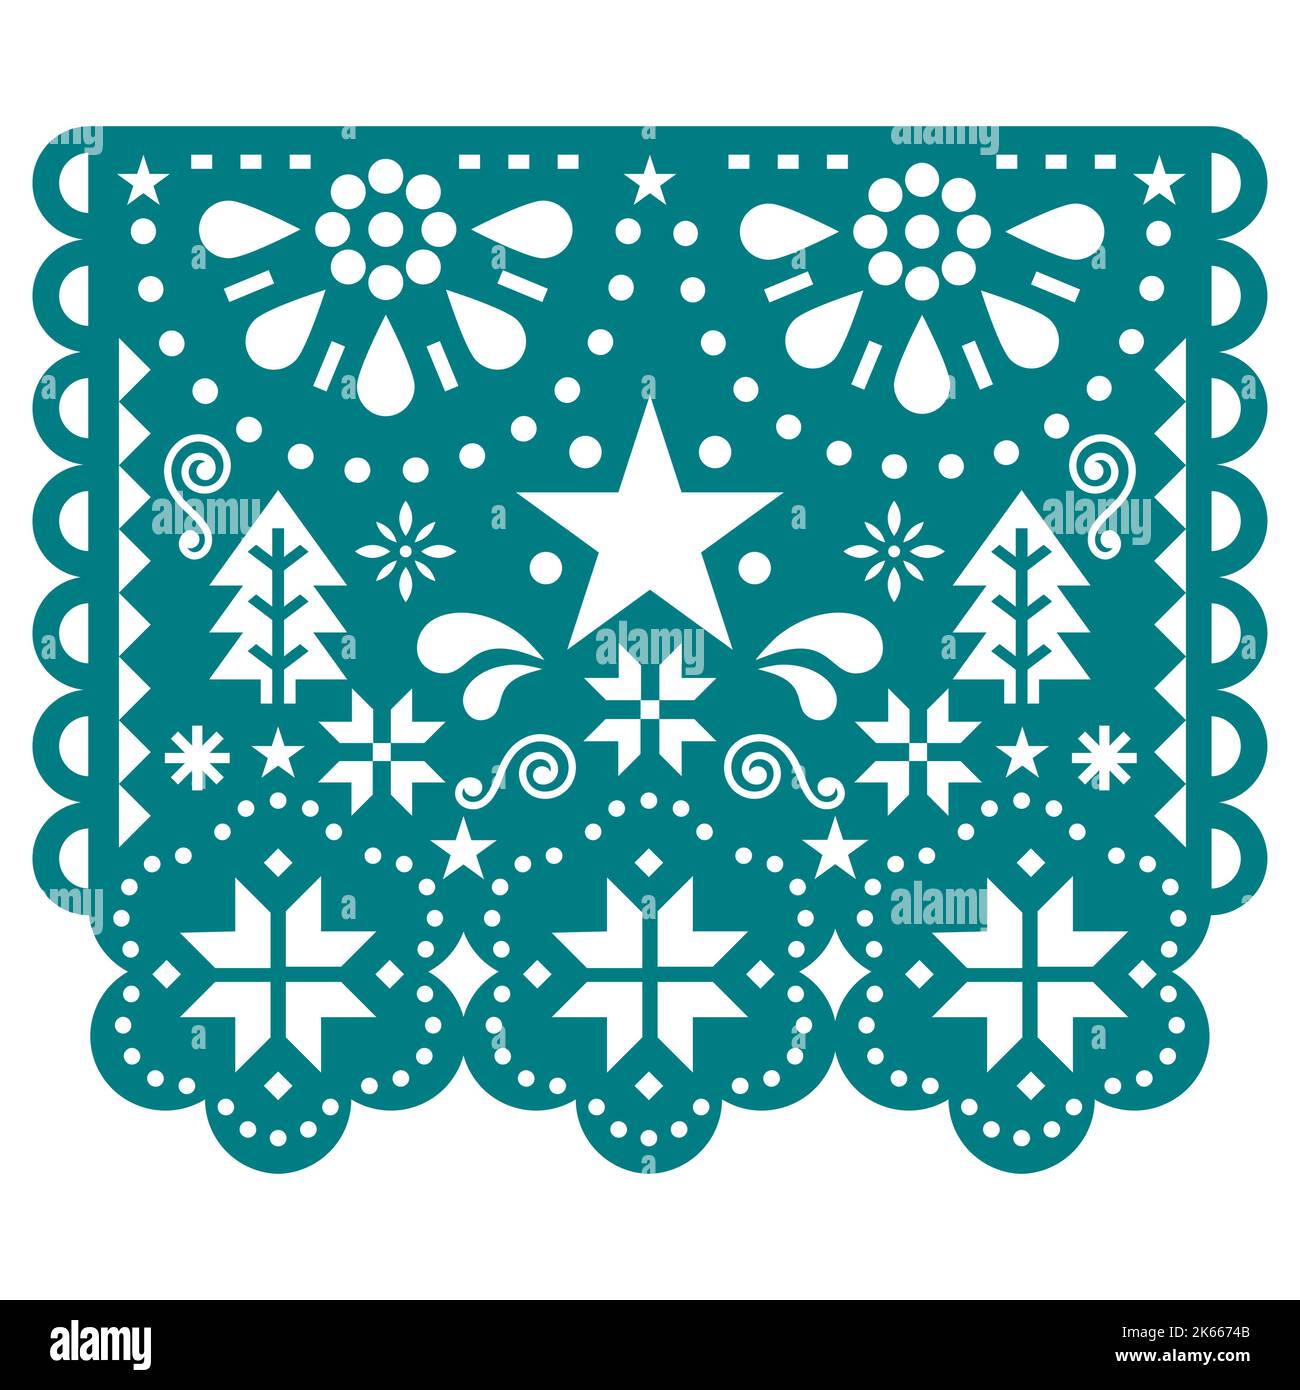 Natale Papel Picado disegno vettoriale con fiocchi di neve, alberi di Natale e stelle, messicano inverno carta festa decorazione ghirland in verde Illustrazione Vettoriale